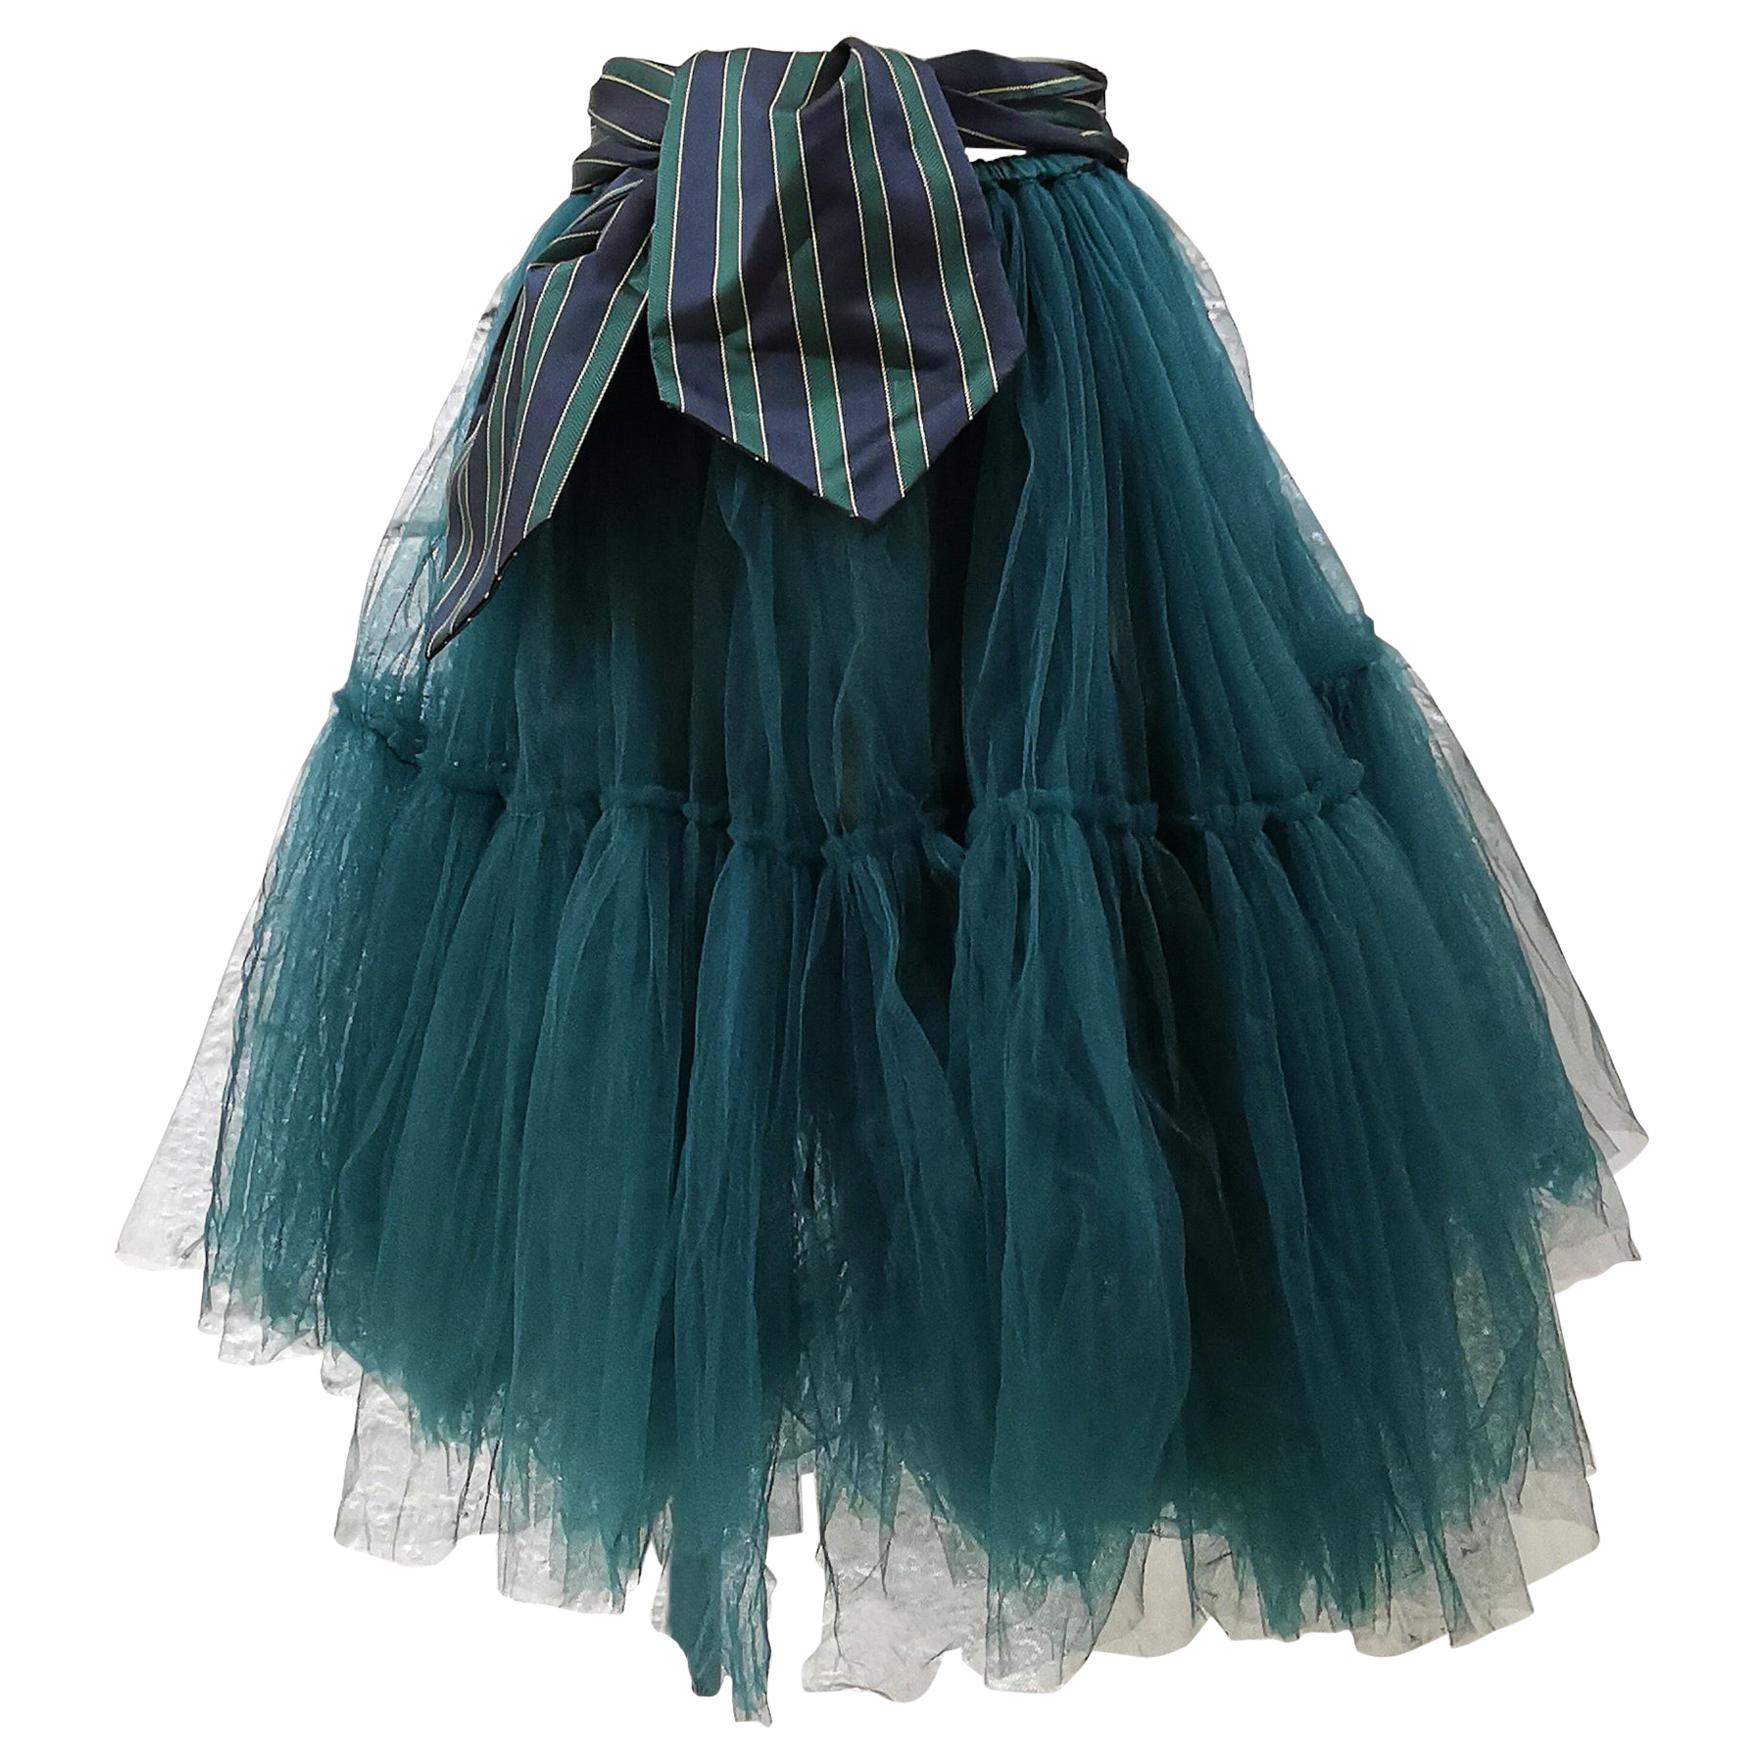 SOAB green tulle skirt / Dress